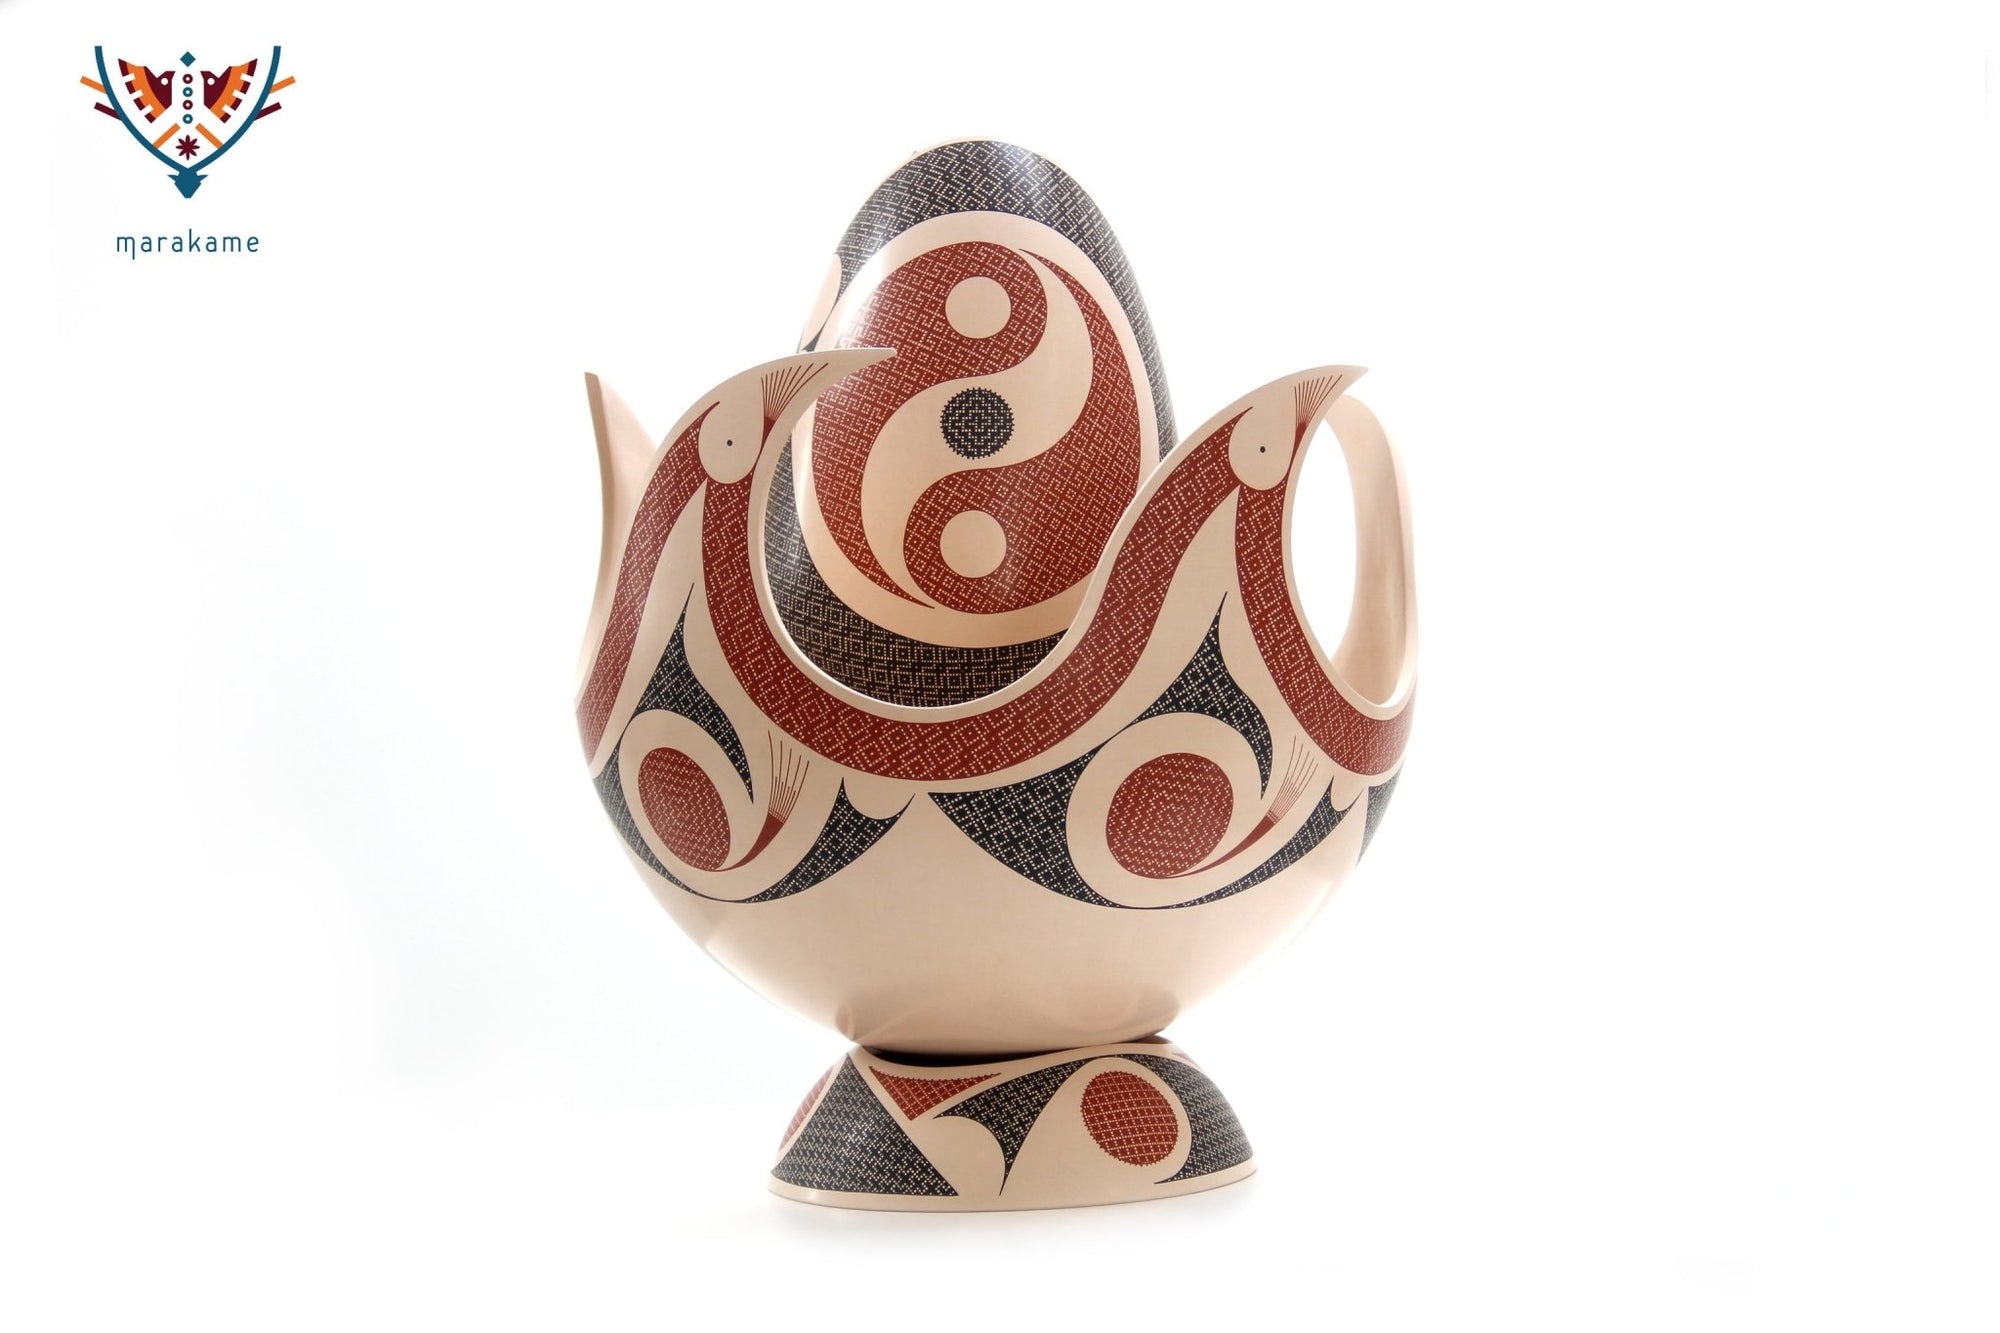 Céramique Mata Ortiz - Feu - Chef-d'œuvre - Art Huichol - Marakame